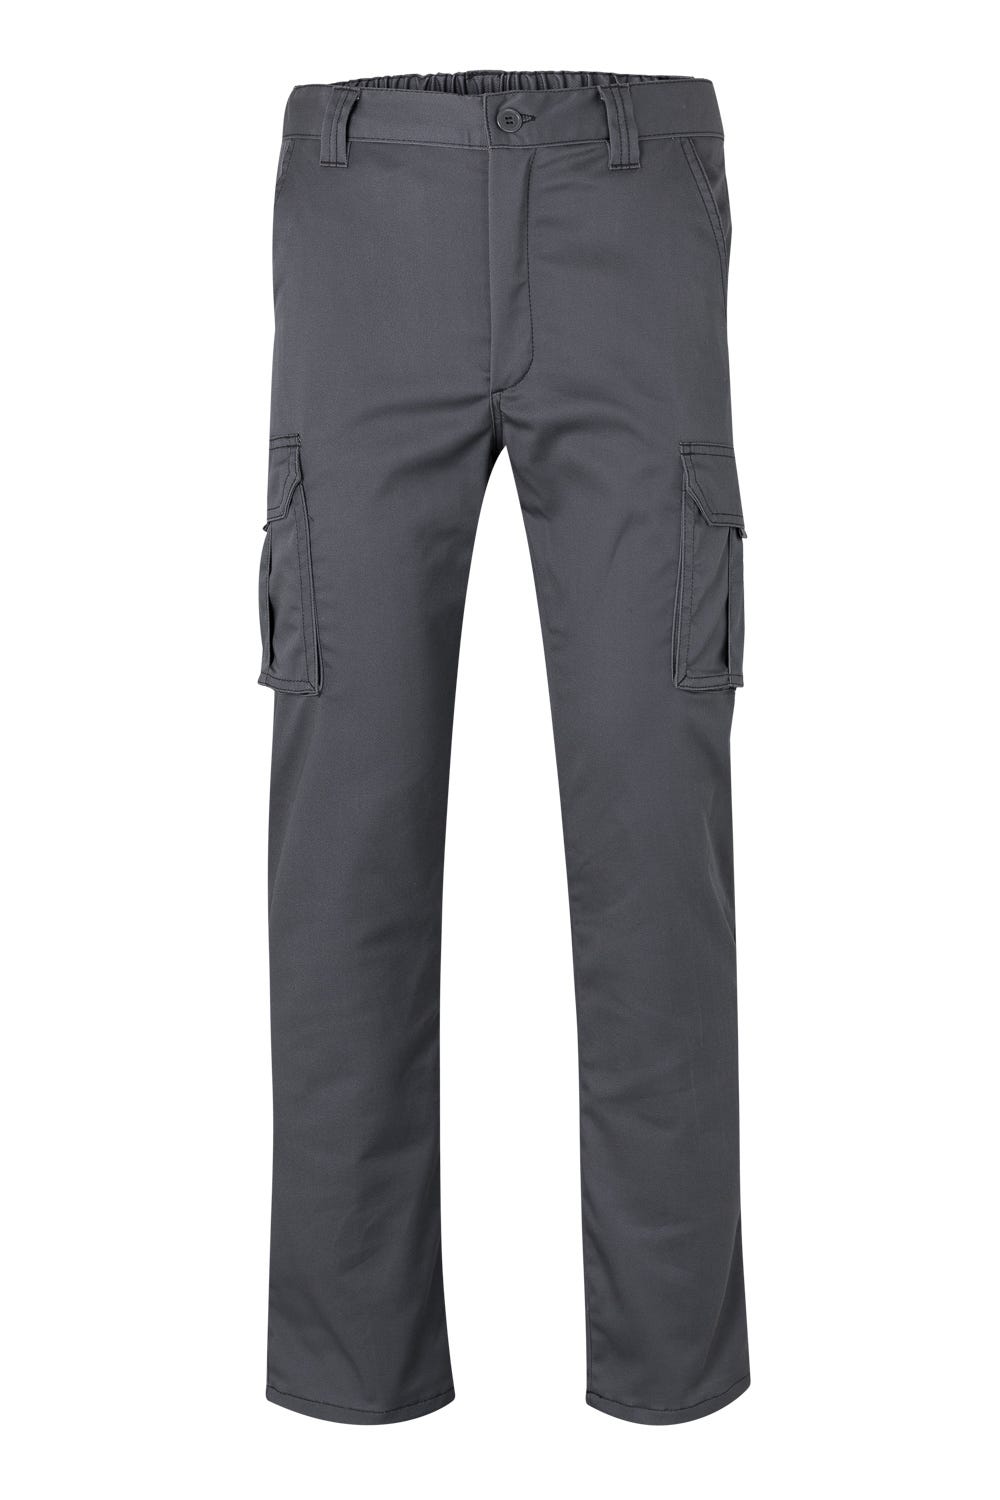 Rietlow® 30 mètres - Ourlet thermocollant pantalon - Ourlet rideau